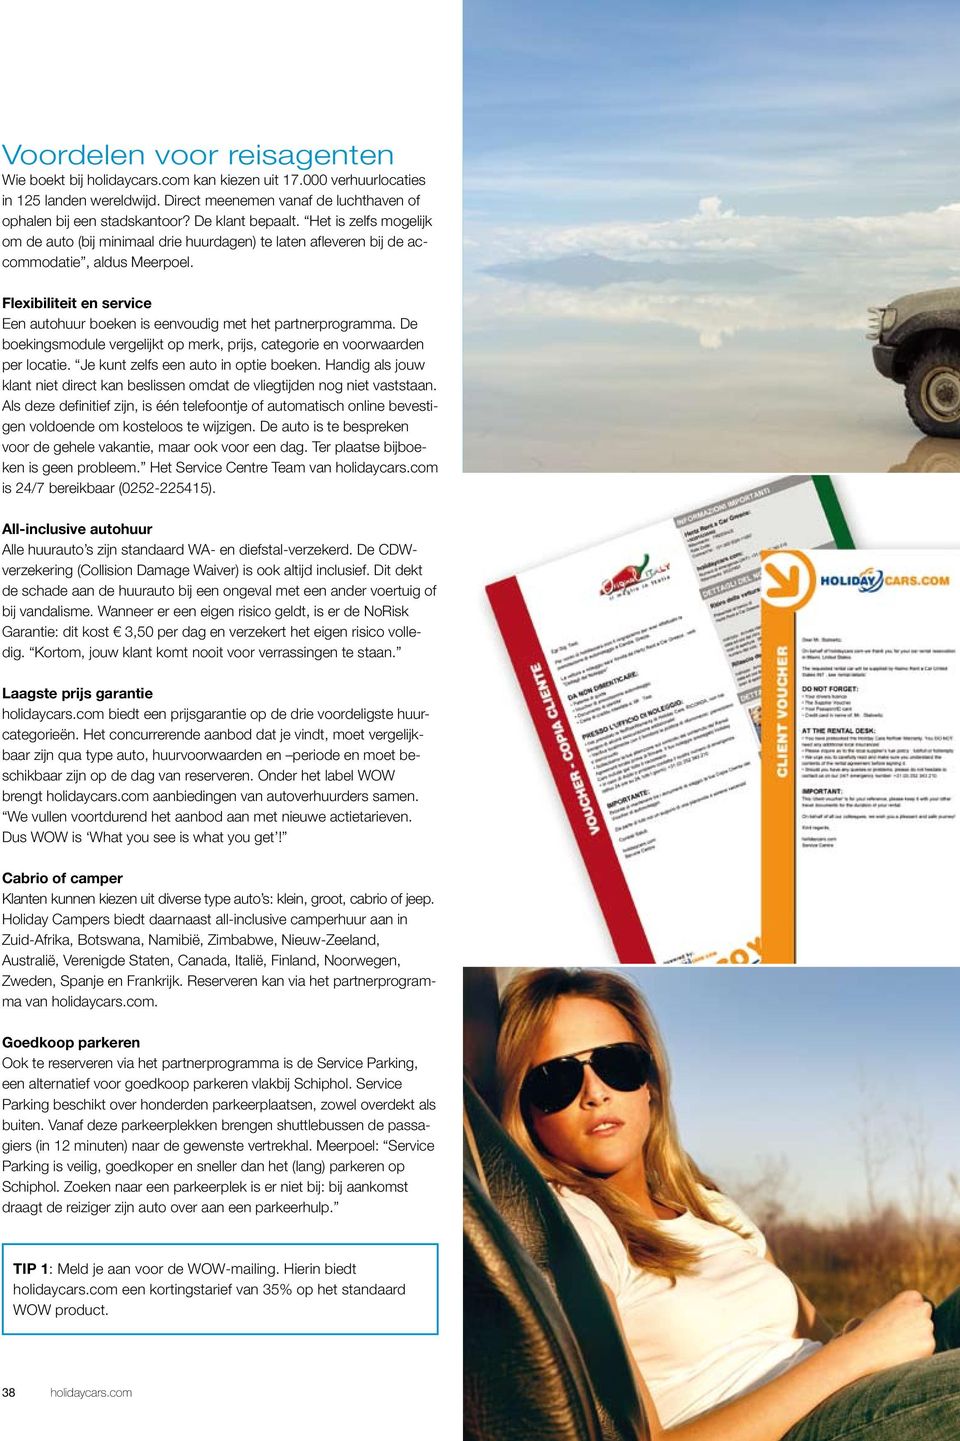 Flexibiliteit en service Een autohuur boeken is eenvoudig met het partnerprogramma. De boekingsmodule vergelijkt op merk, prijs, categorie en voorwaarden per locatie.